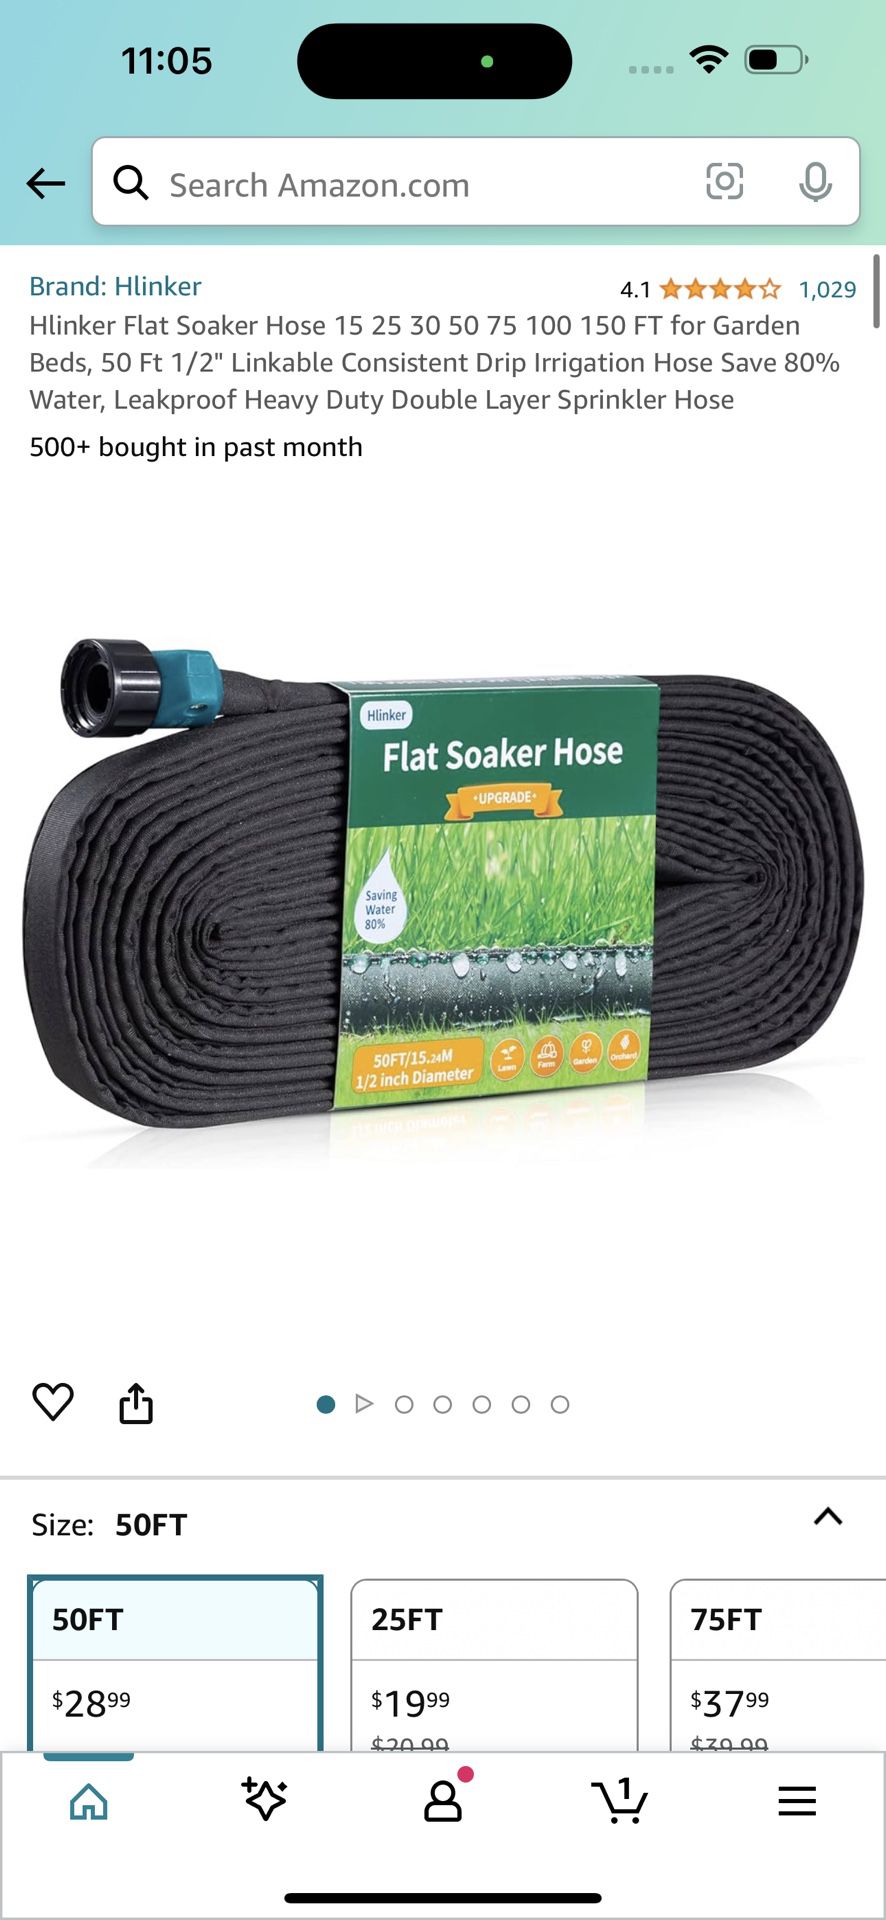 Hlinker Flat Soaker Hose 15 25 30 50 75 100 150 FT for Garden Beds, 50 Ft 1/2" Linkable Consistent Drip Irrigation Hose Save 80% Water, Leakproof Heav